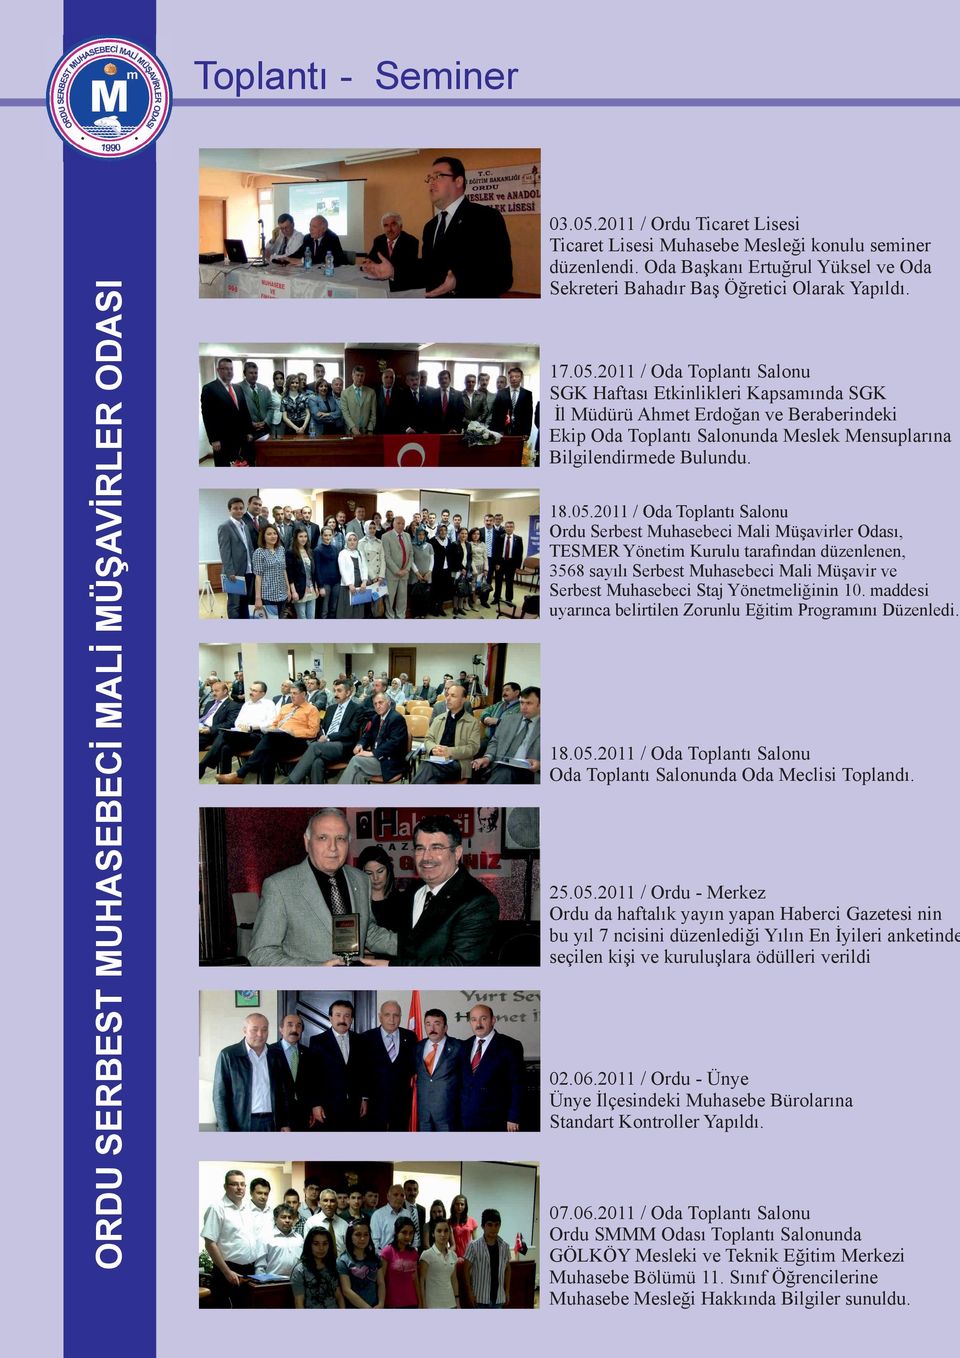 2011 / Oda Toplantı Salonu Ordu Serbest Muhasebeci Mali Müşavirler Odası, TESMER Yönetim Kurulu tarafından düzenlenen, 3568 sayılı Serbest Muhasebeci Mali Müşavir ve Serbest Muhasebeci Staj